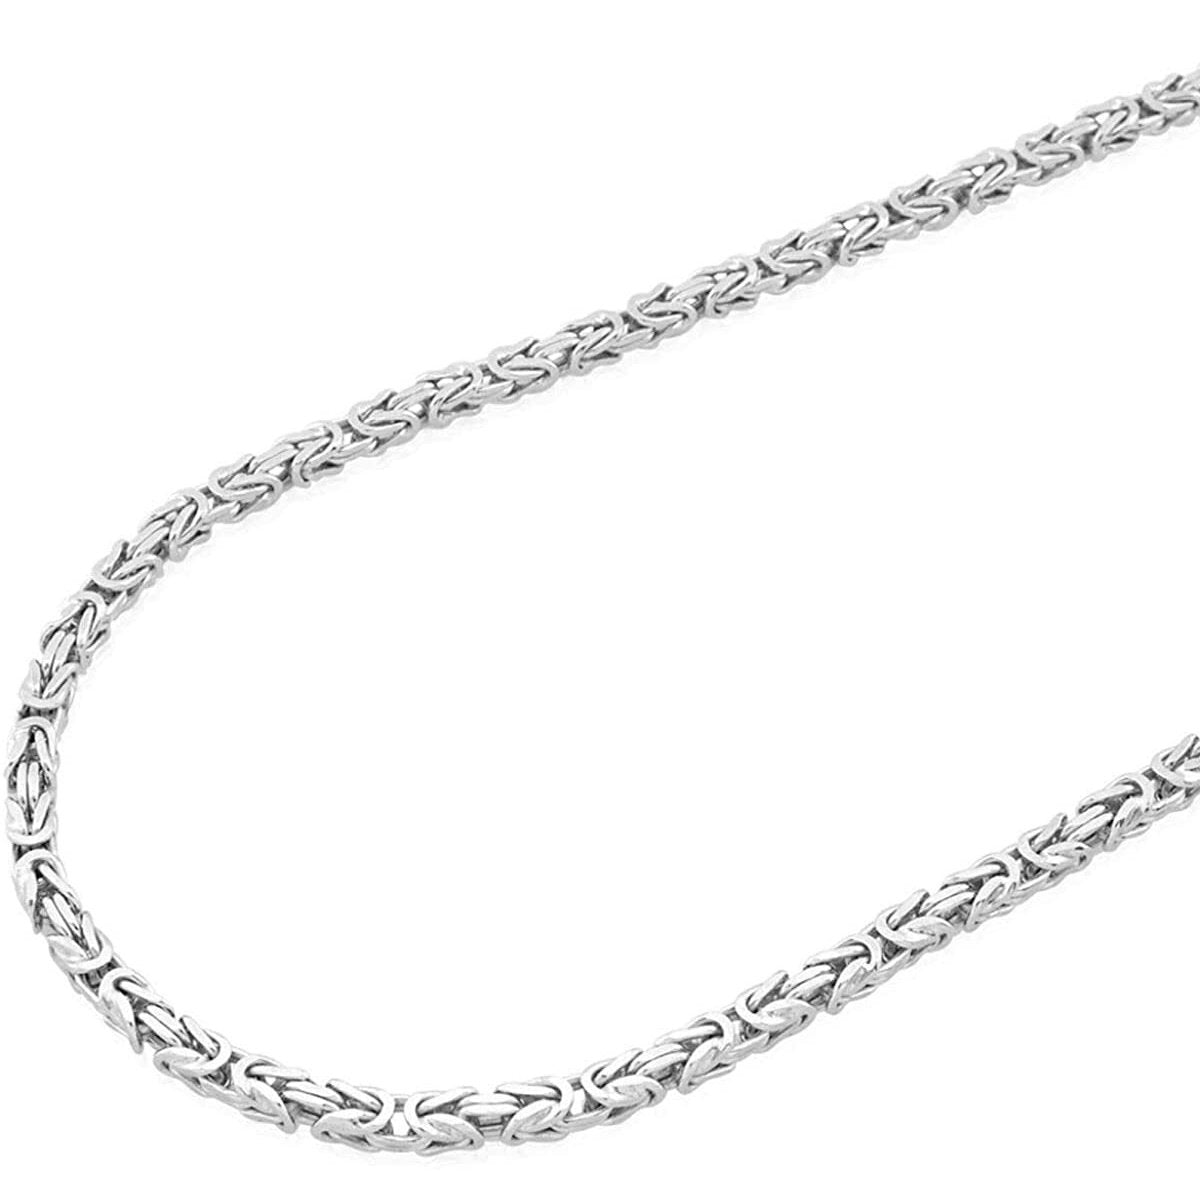 Silver byzantine chain - Monte Cristo